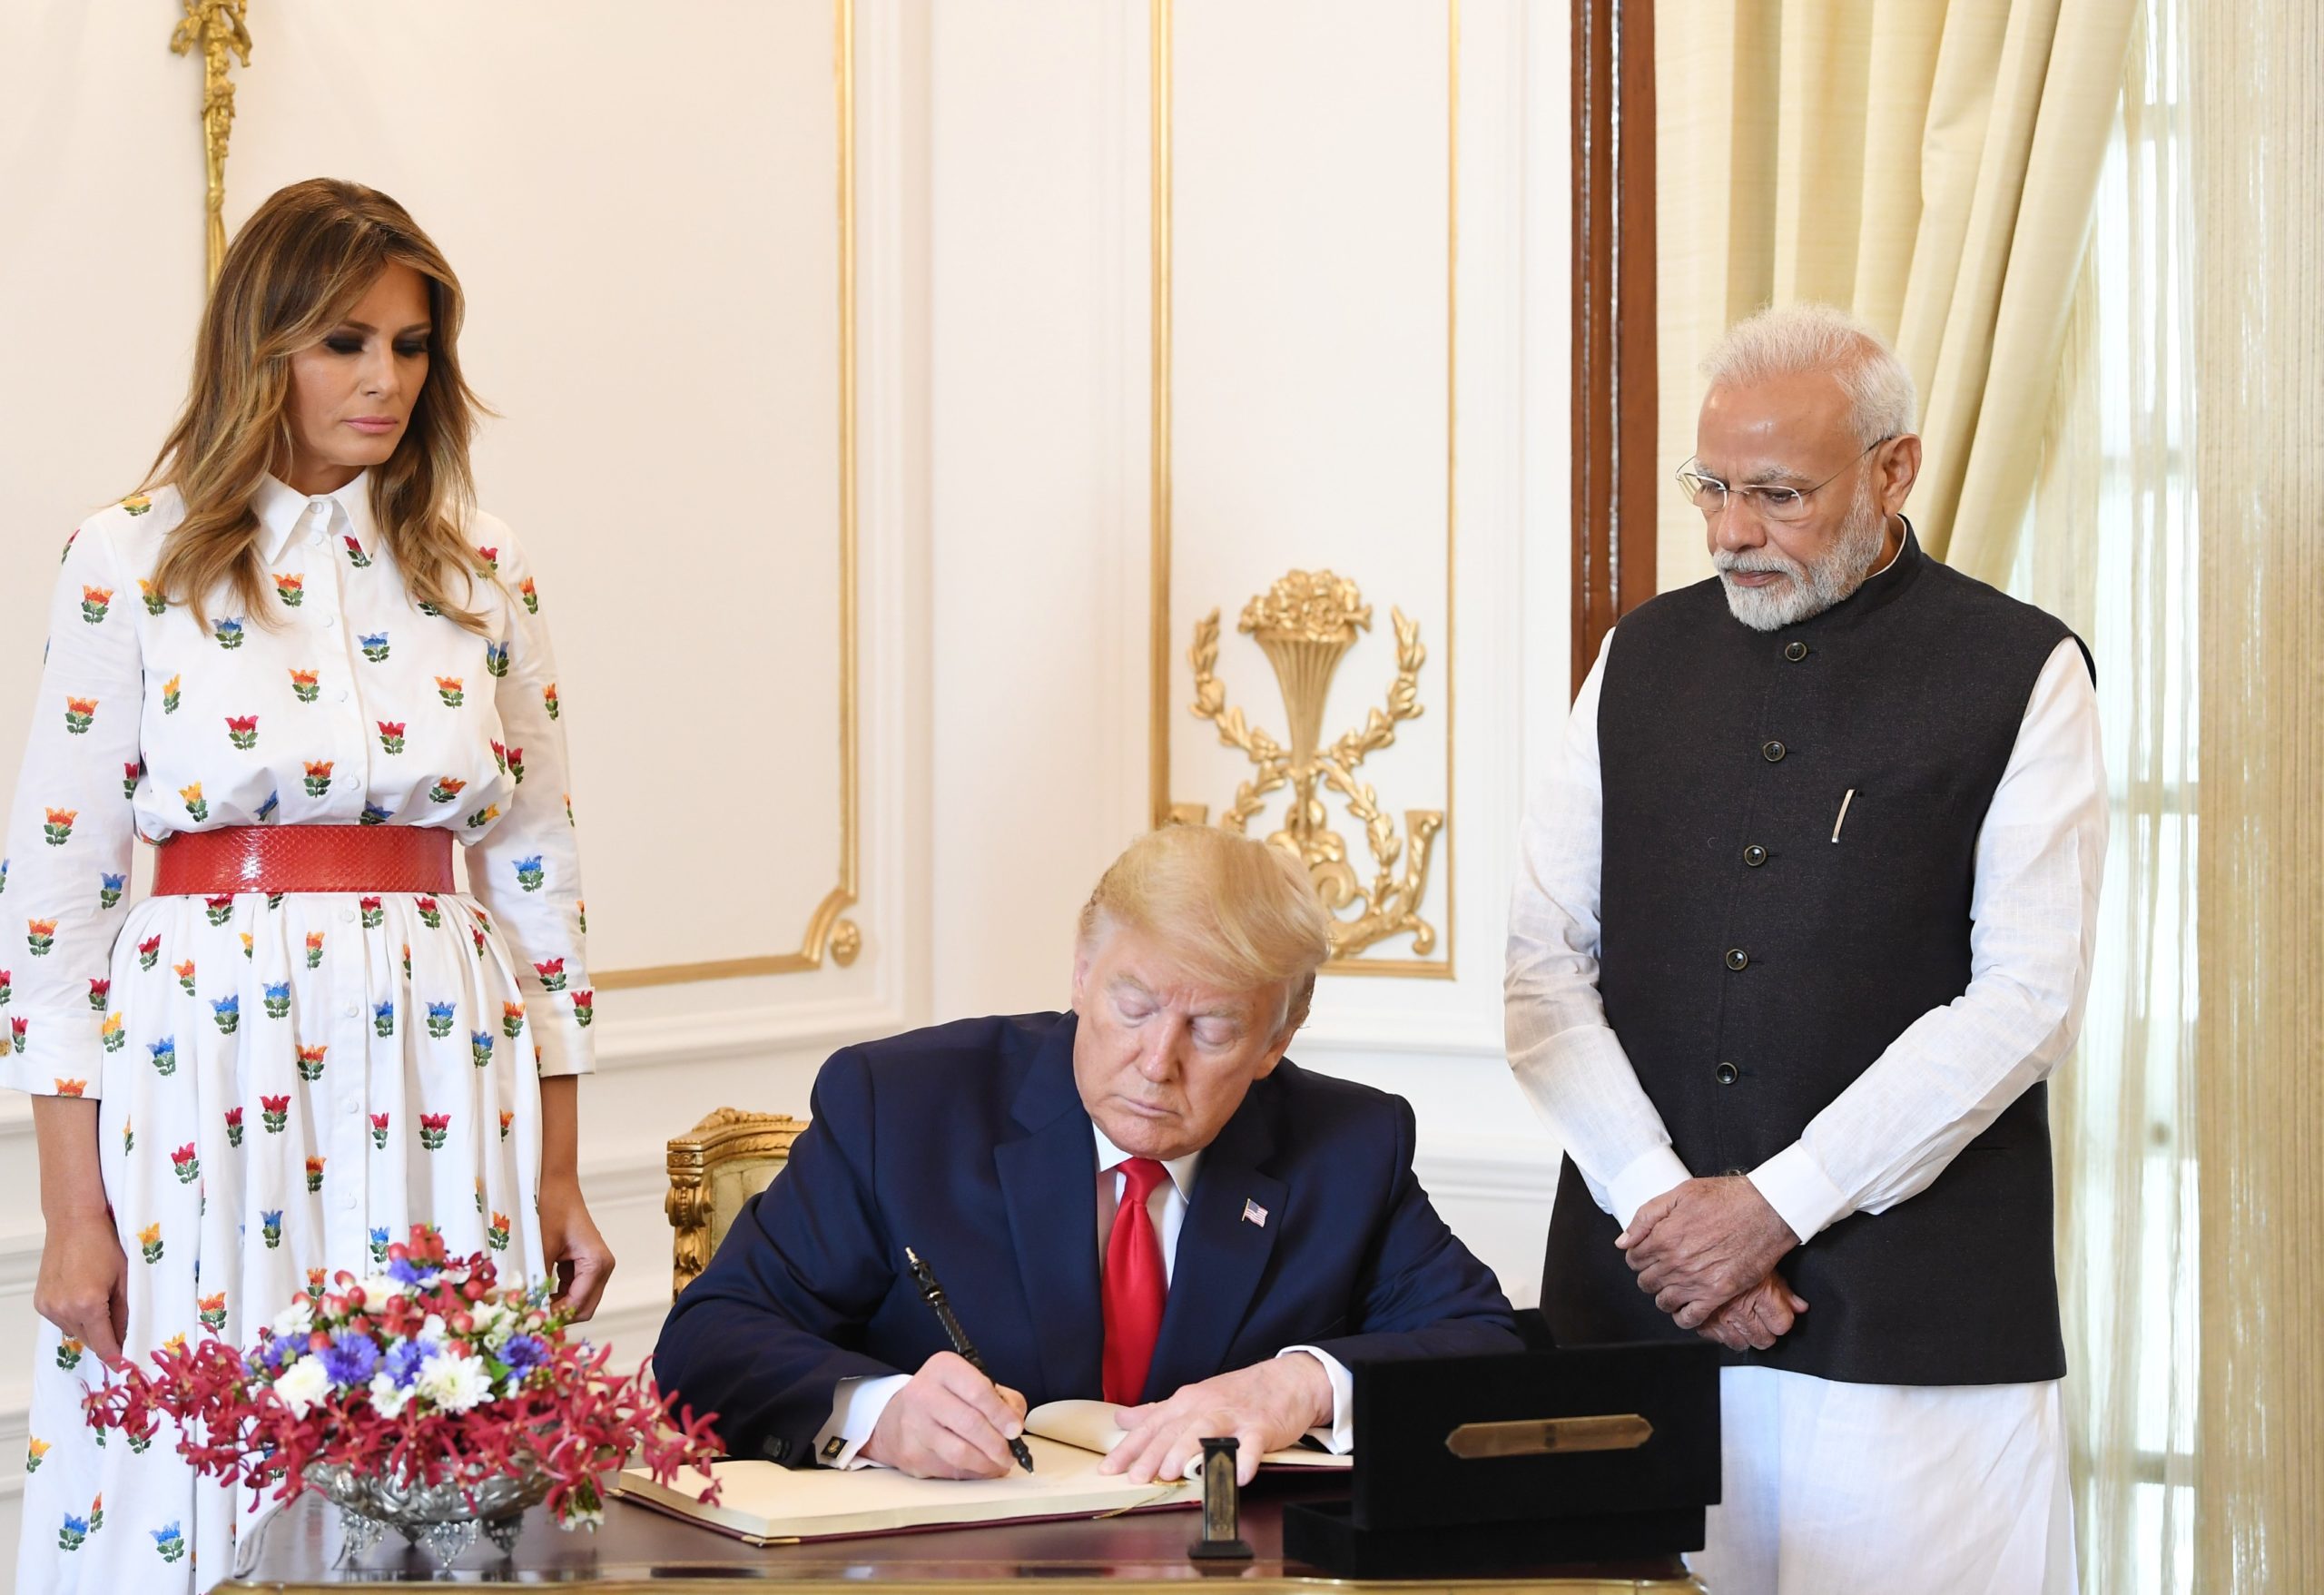 President Trump and PM Modi Bilateral Discussion